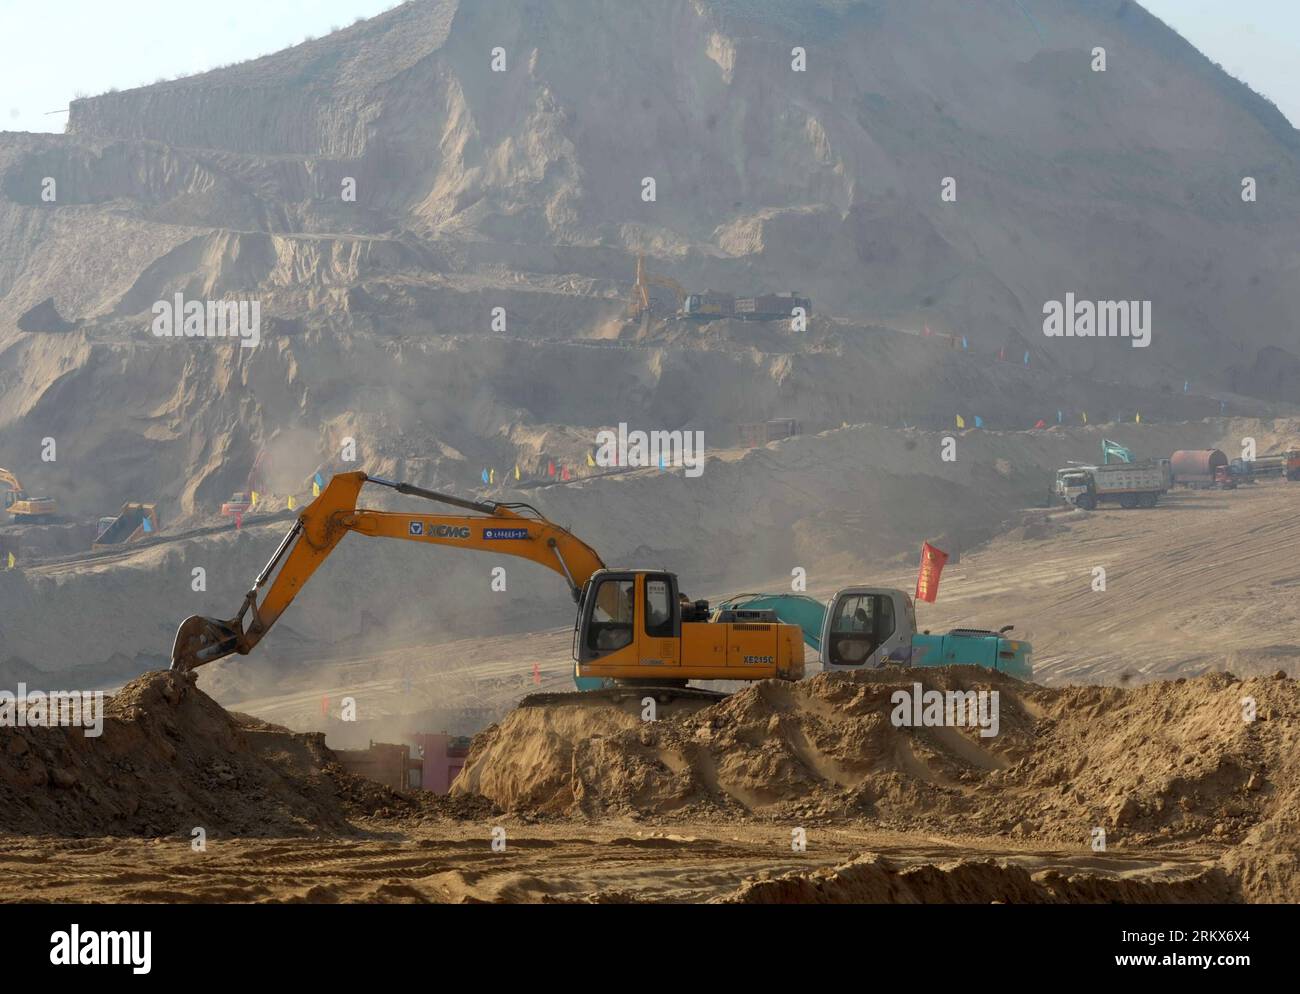 Bildnummer: 58902246 Datum: 10.12.2012 Copyright: imago/Xinhua (121210) -- LANZHOU, 10 dicembre 2012 (Xinhua) -- i veicoli da costruzione lavorano in una regione collinare a Lanzhou, capitale della provincia del Gansu della Cina nord-occidentale, 10 dicembre 2012. Da ottobre è in corso la costruzione di un progetto di sviluppo del terreno, in quanto la città ha pianificato di rimuovere alcune delle sue aride colline per fornire terreno di 25 chilometri quadrati in mezzo anno per lo sviluppo della città. (Xinhua/Nie Jianjiang) CHINA-GANSU-LANZHOU-CITY CONSTRUCTION (CN) PUBLICATIONxNOTxINxCHN Wirtschaft Baugewerbe Baustelle Bauarbeiten Bodenarbeiten xjh x0x 20 Foto Stock